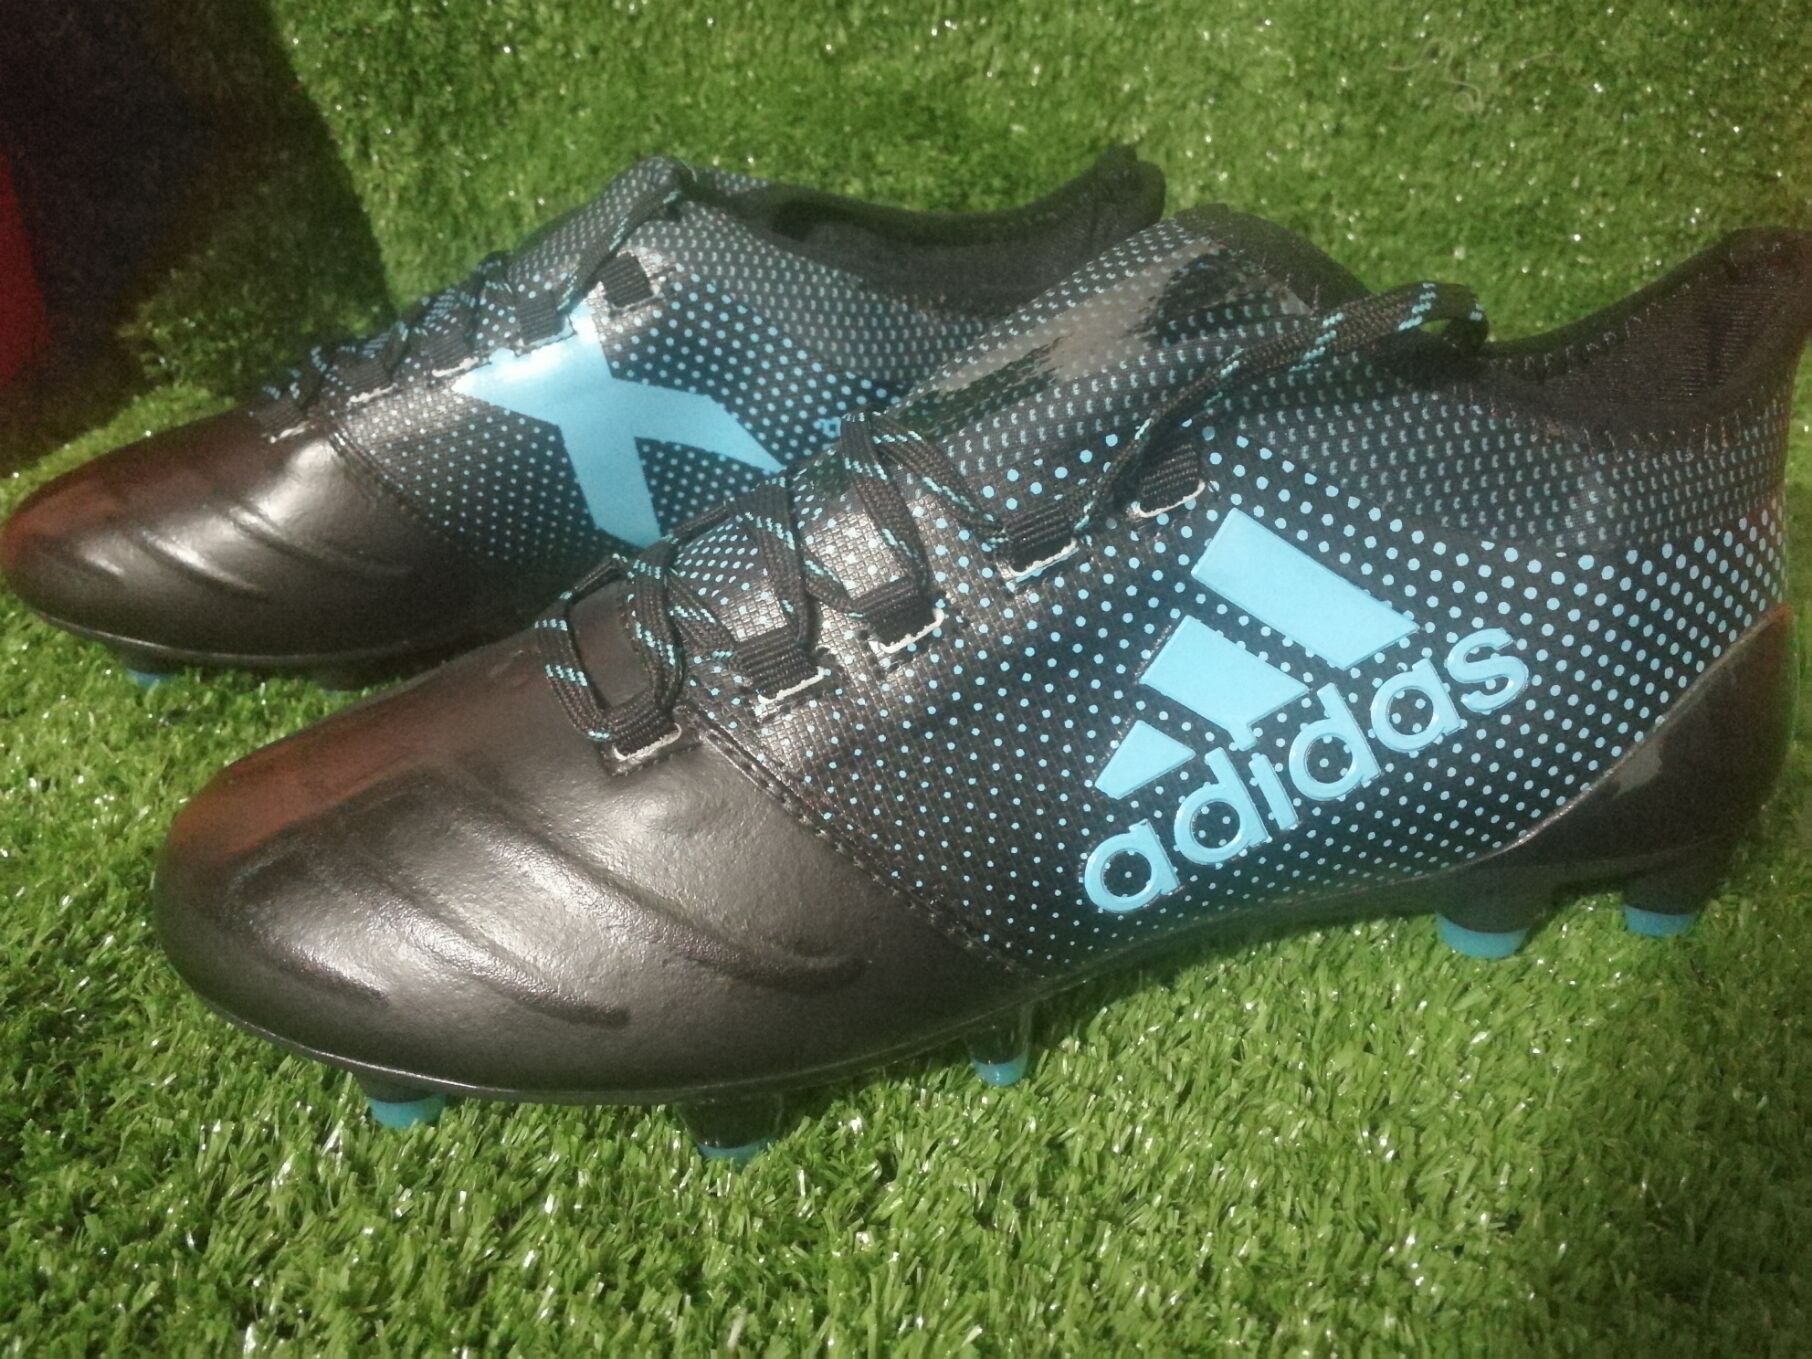 เกี่ยวกับ ส่งจากกรุงเทพ Adidas_X 17.1 รองเท้าฟุตซอล รองเท้าฟุตบอลรองเท้าฟุตบอลอาชีพรองเท้าฟุตบอลฟุตซอล รองเท้าสตั๊ด